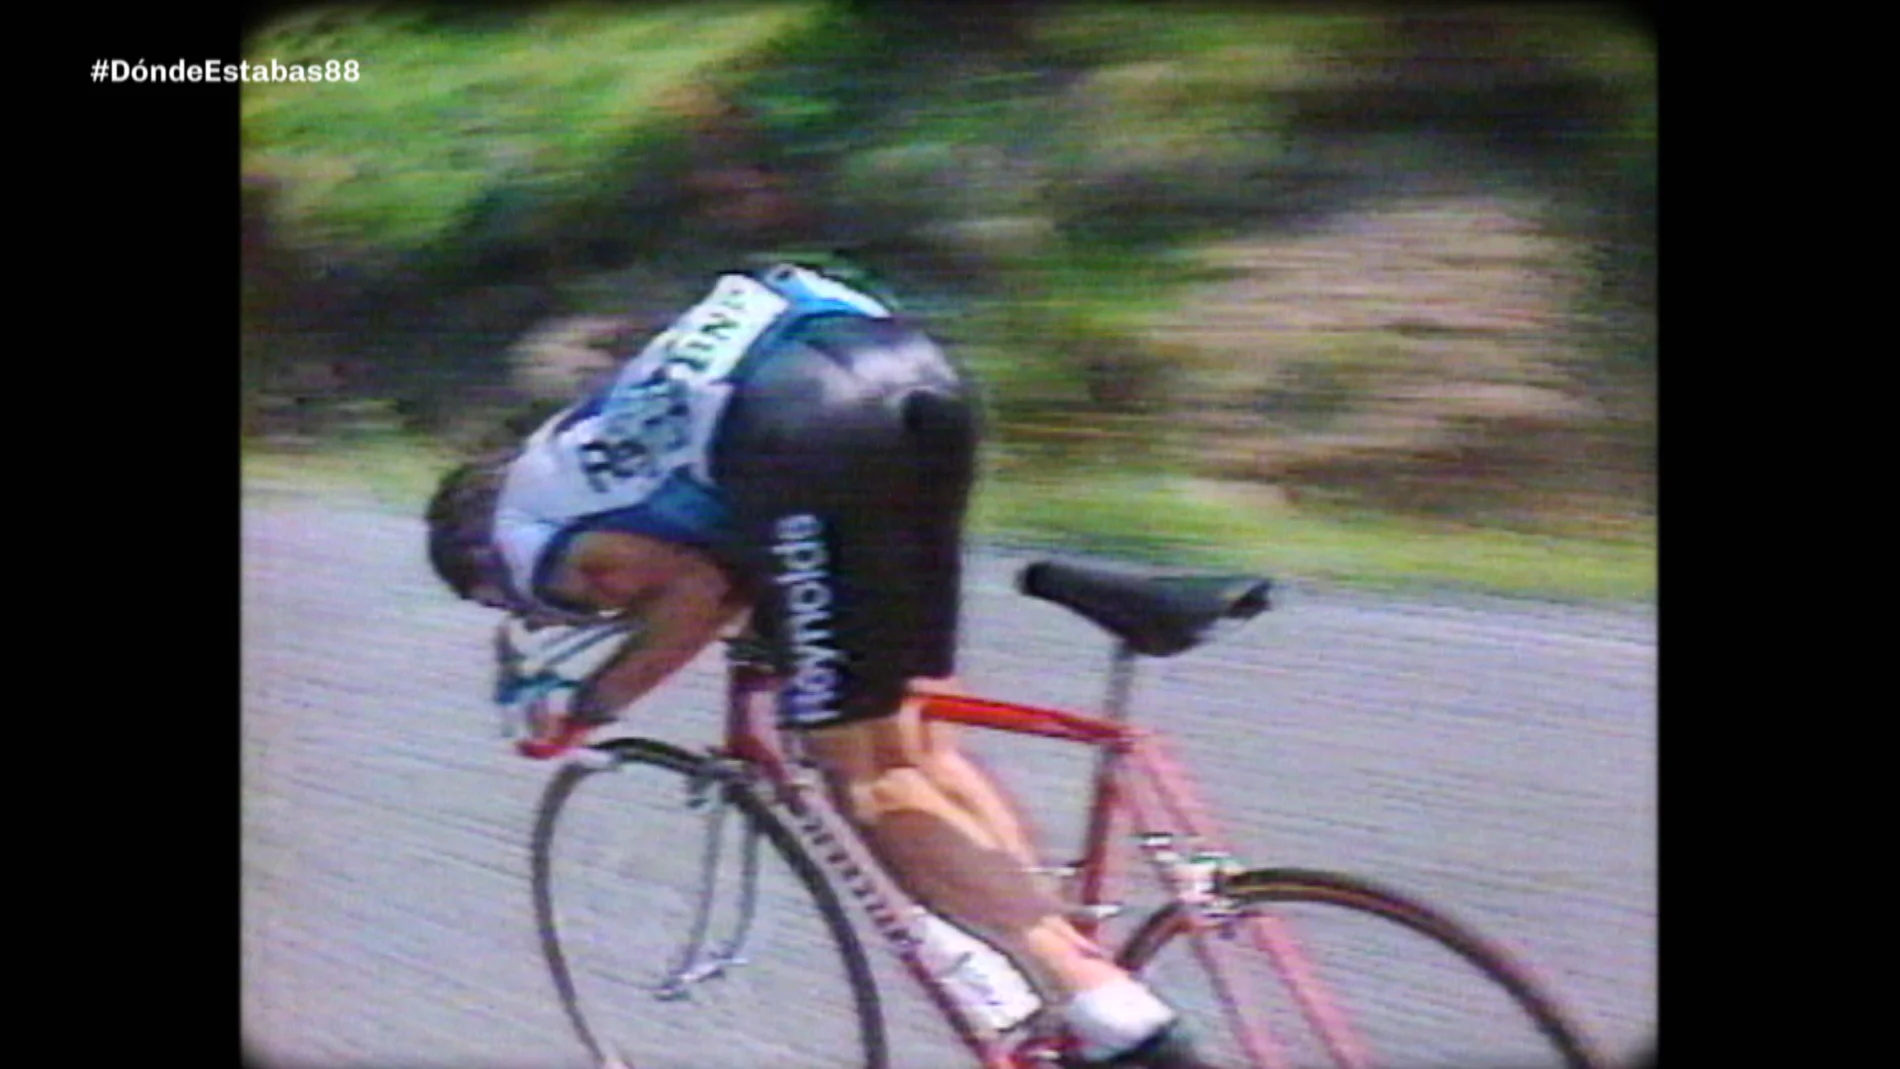 Pedro Delgado Tour de Francia de 1988